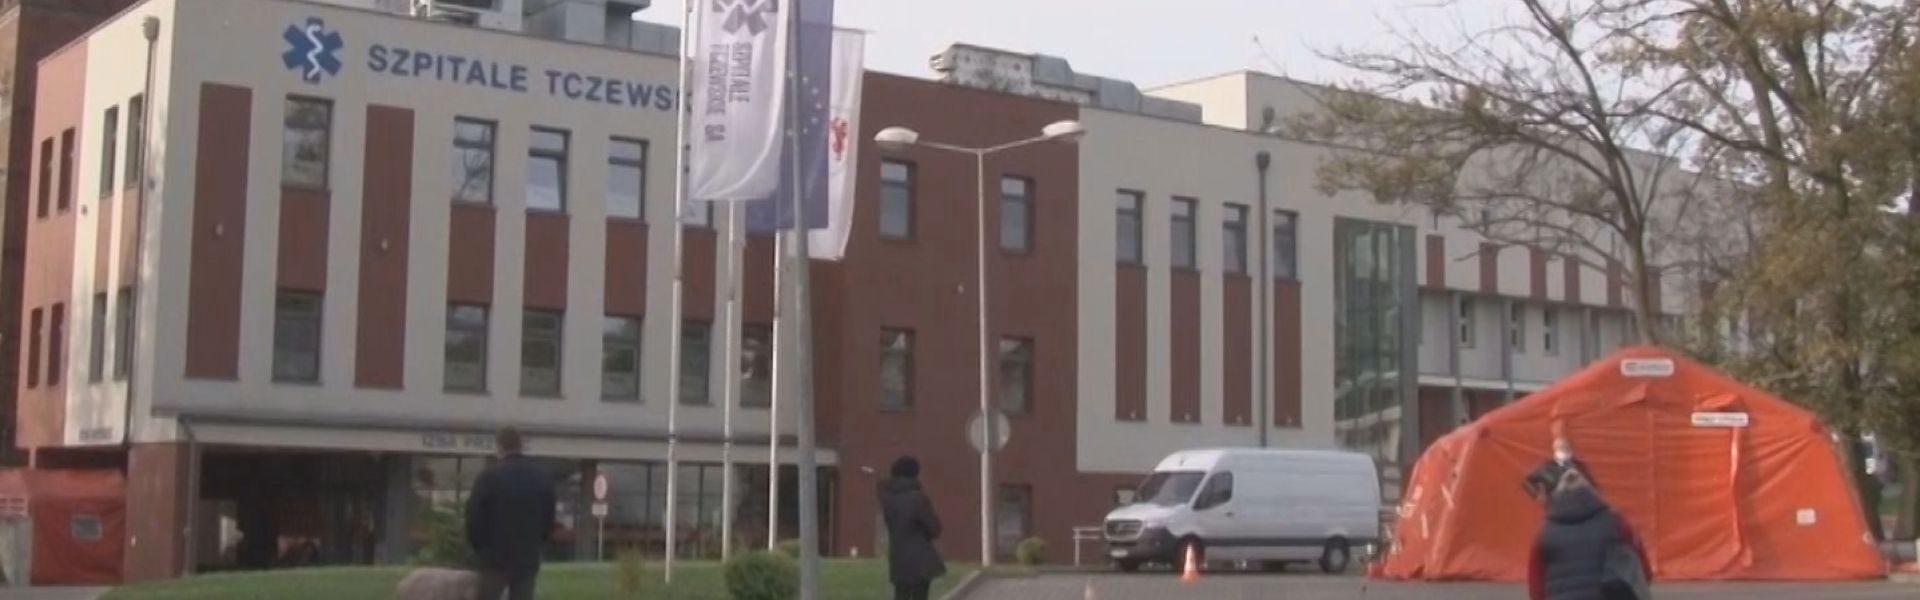 Niemiecki ubezpieczyciel chce 5 mln zł od szpitala